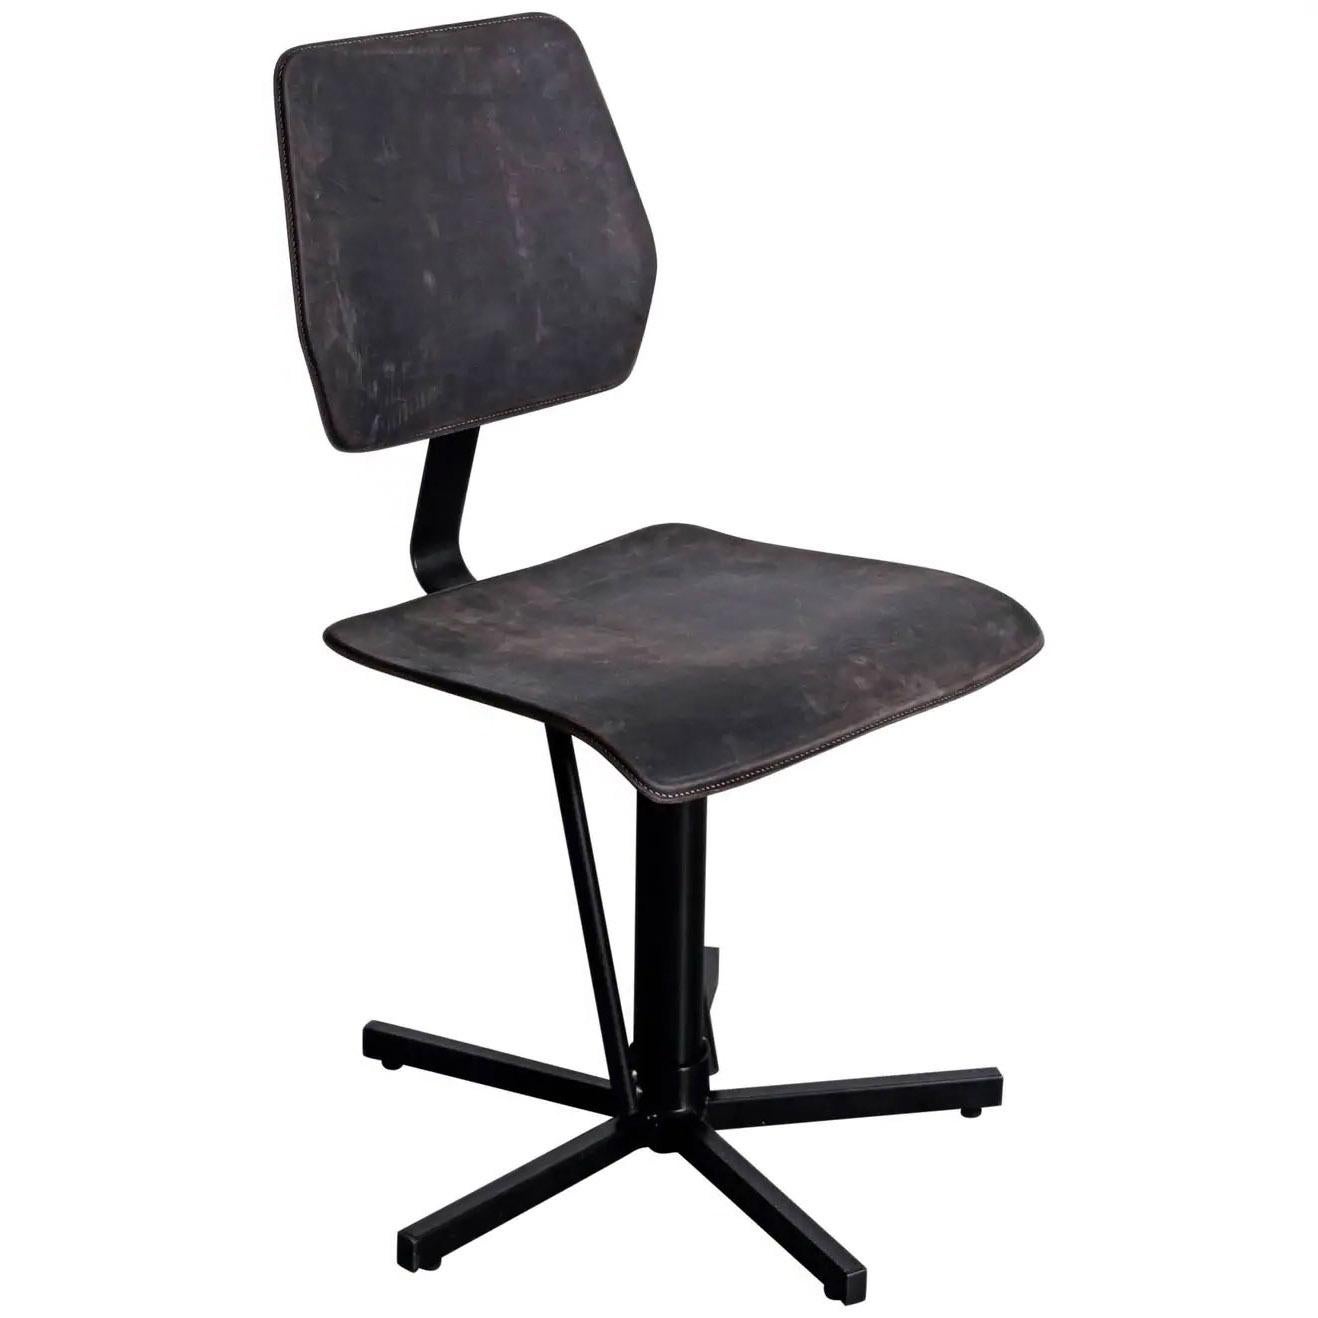 Dutch Modern Leather & Steel Chair, Kodak by Jesse Sanderson for WDSTCK For Sale